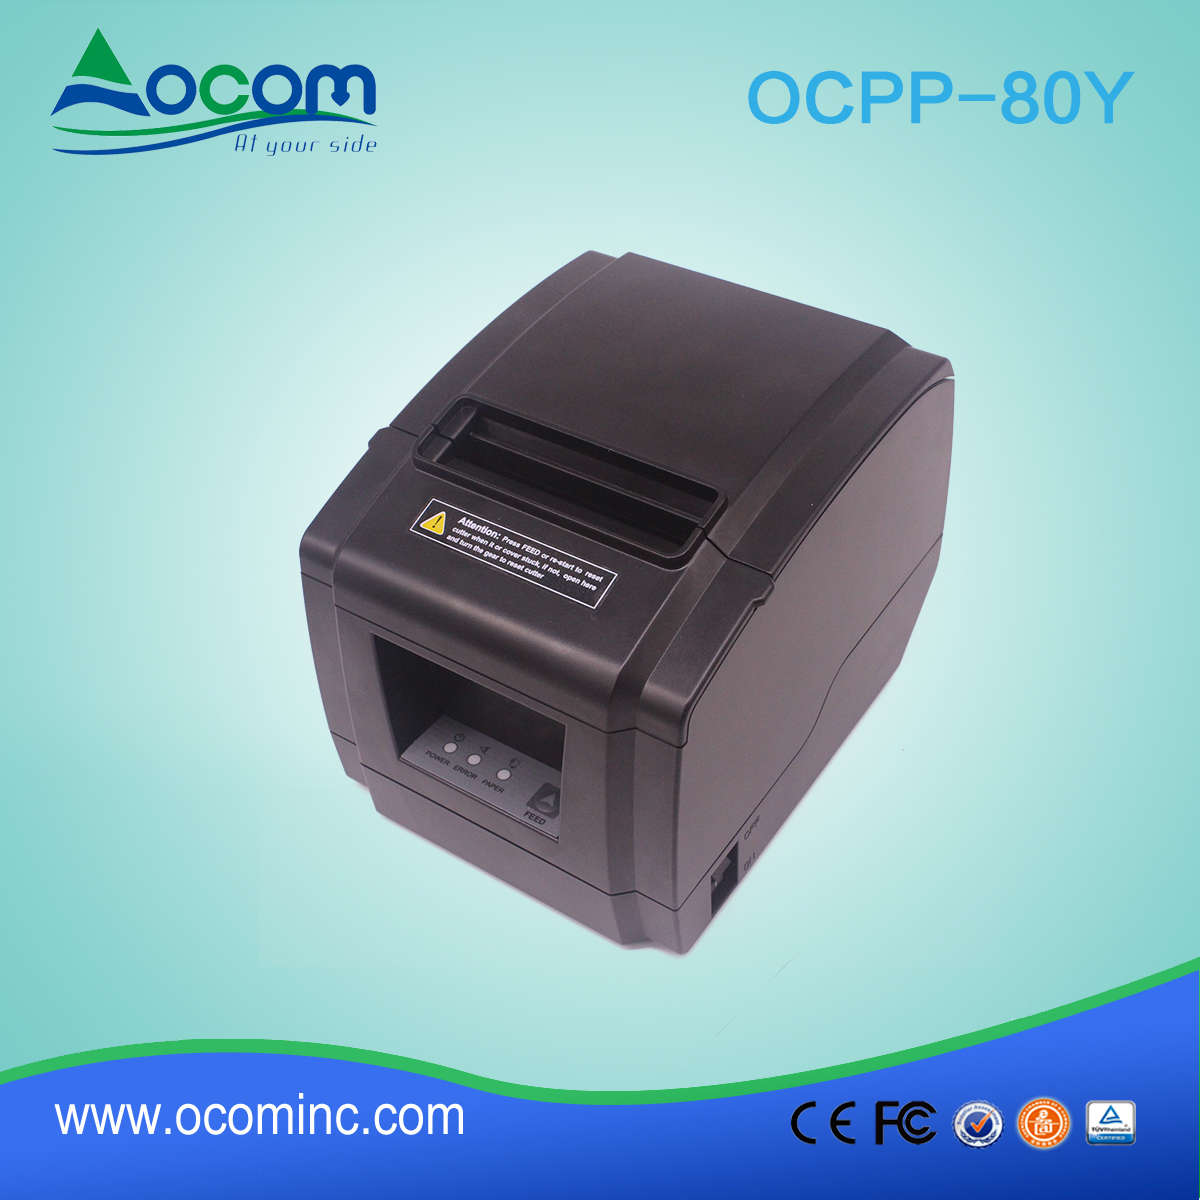 Impresora térmica modelo nuevo OCPP-80Y 80 mm con usb y cortador automático